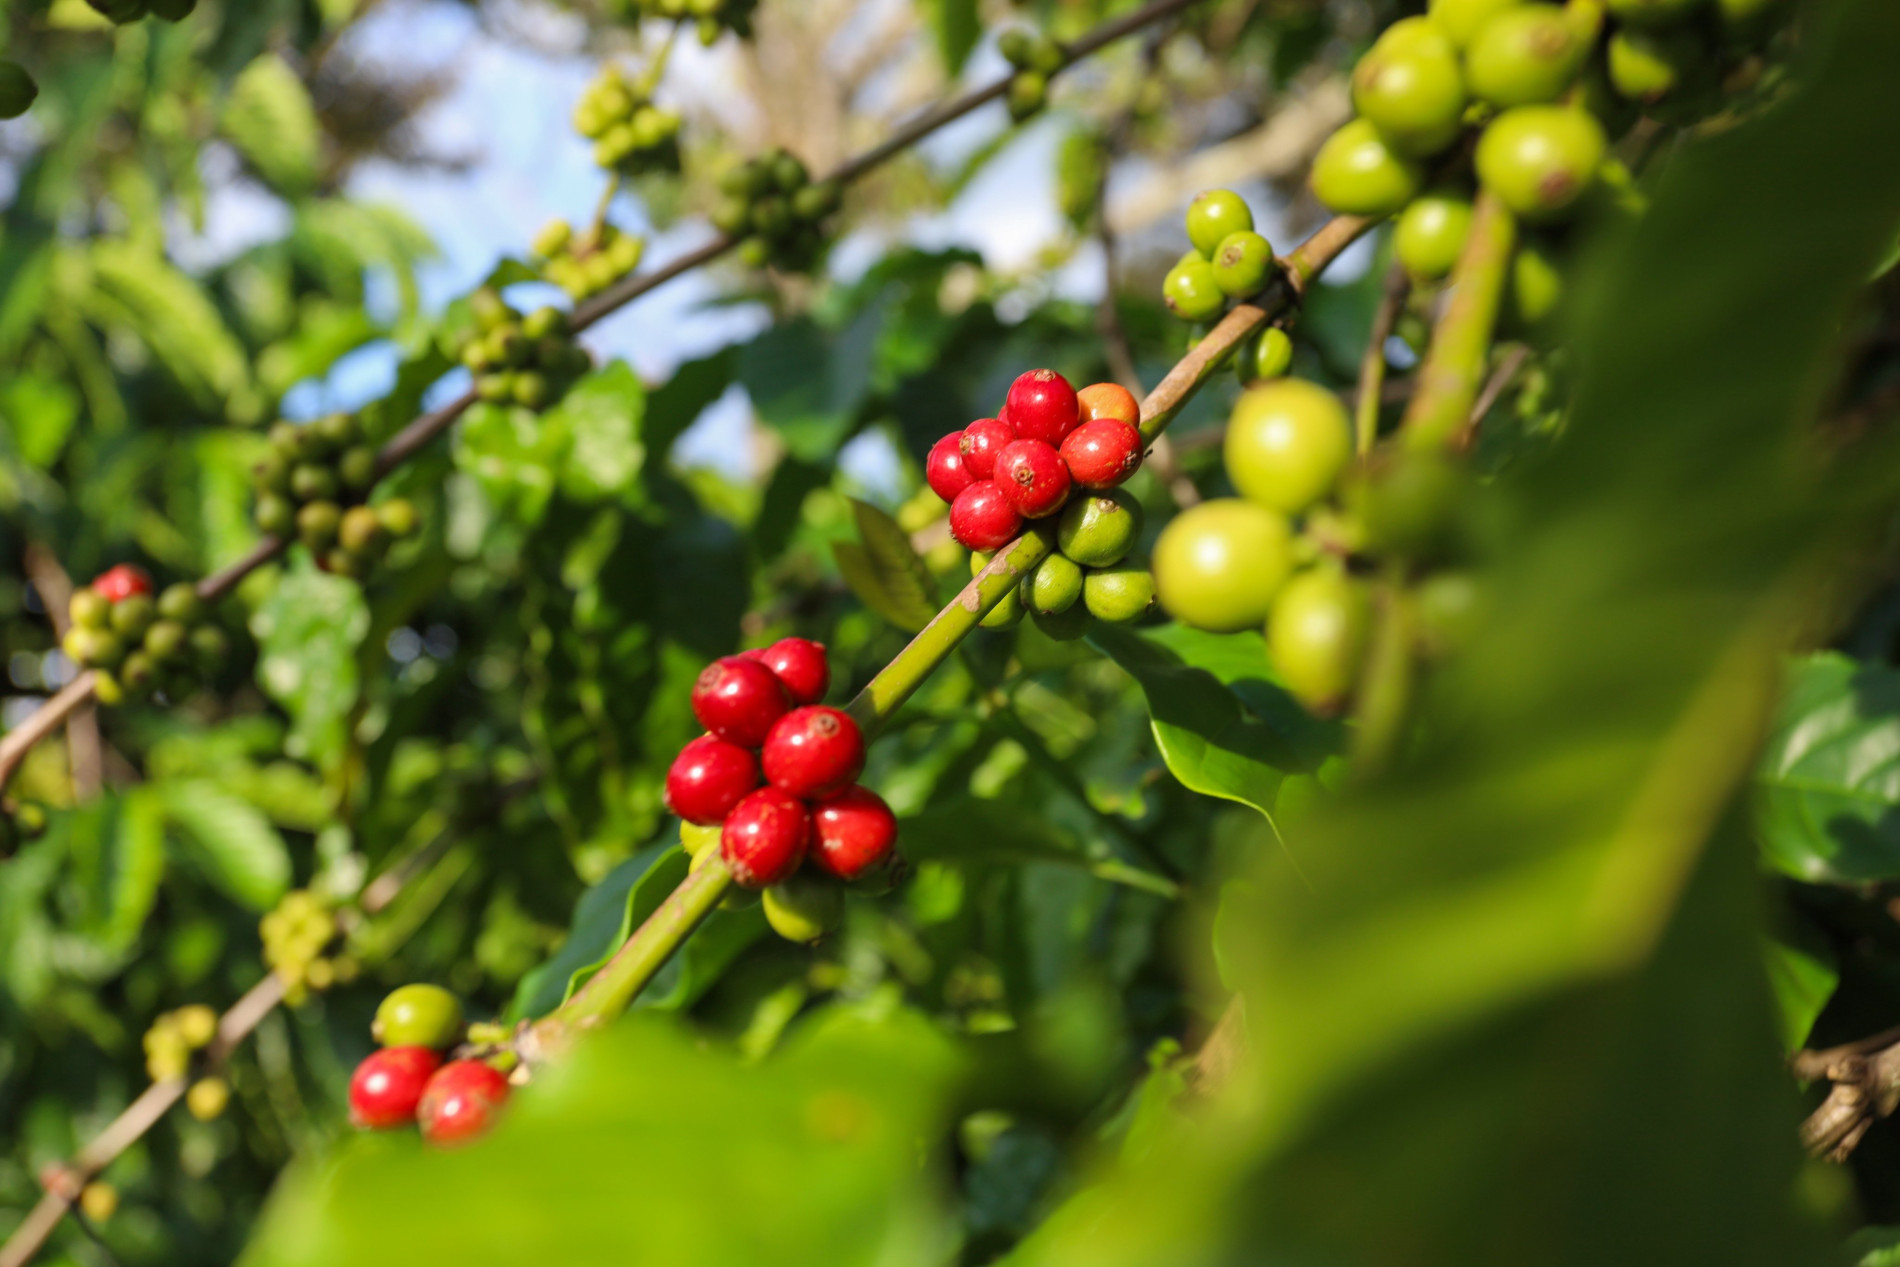 Lo thiếu hụt nguồn cung, giá cà phê hai sàn hồi phục, cà phê nội sắp chạm ngưỡng 52.000 đồng/kg - Ảnh 3.